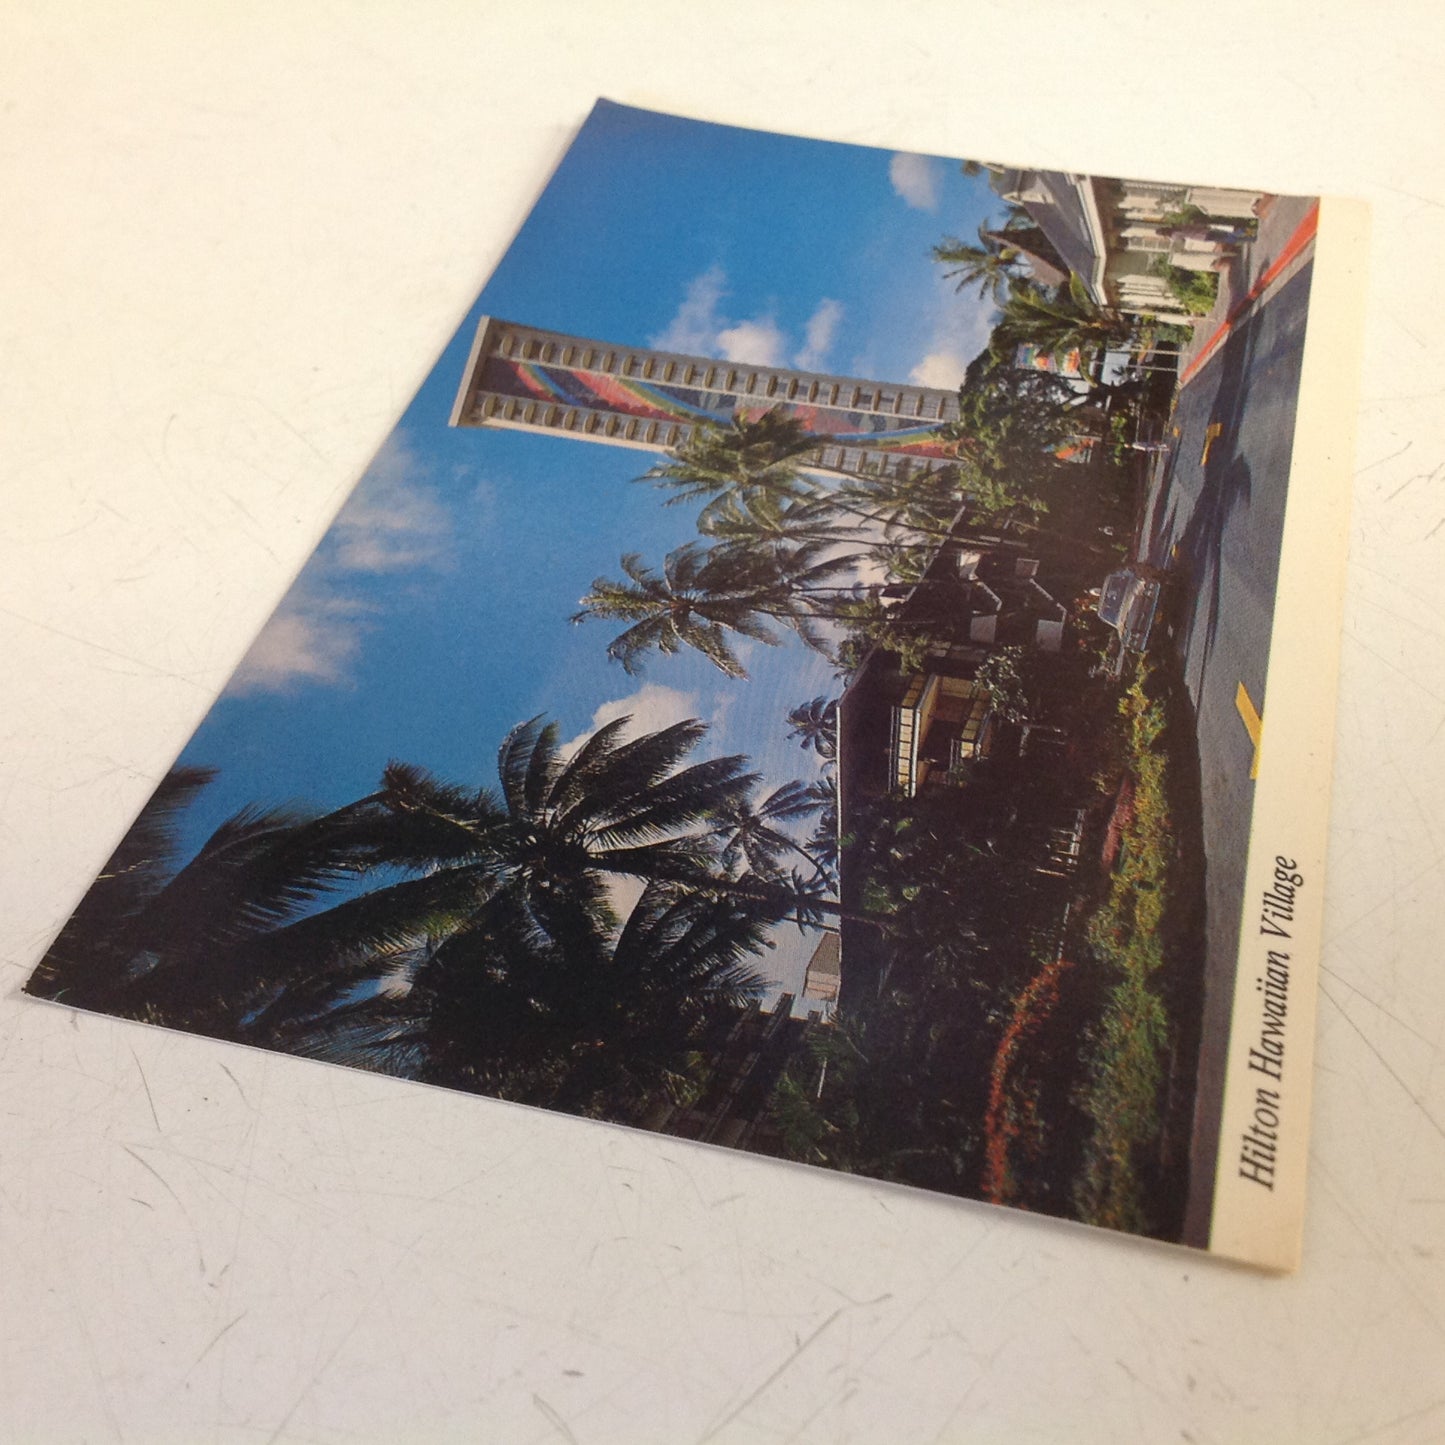 Vintage Hilton Hawaiian Village Color Postcard